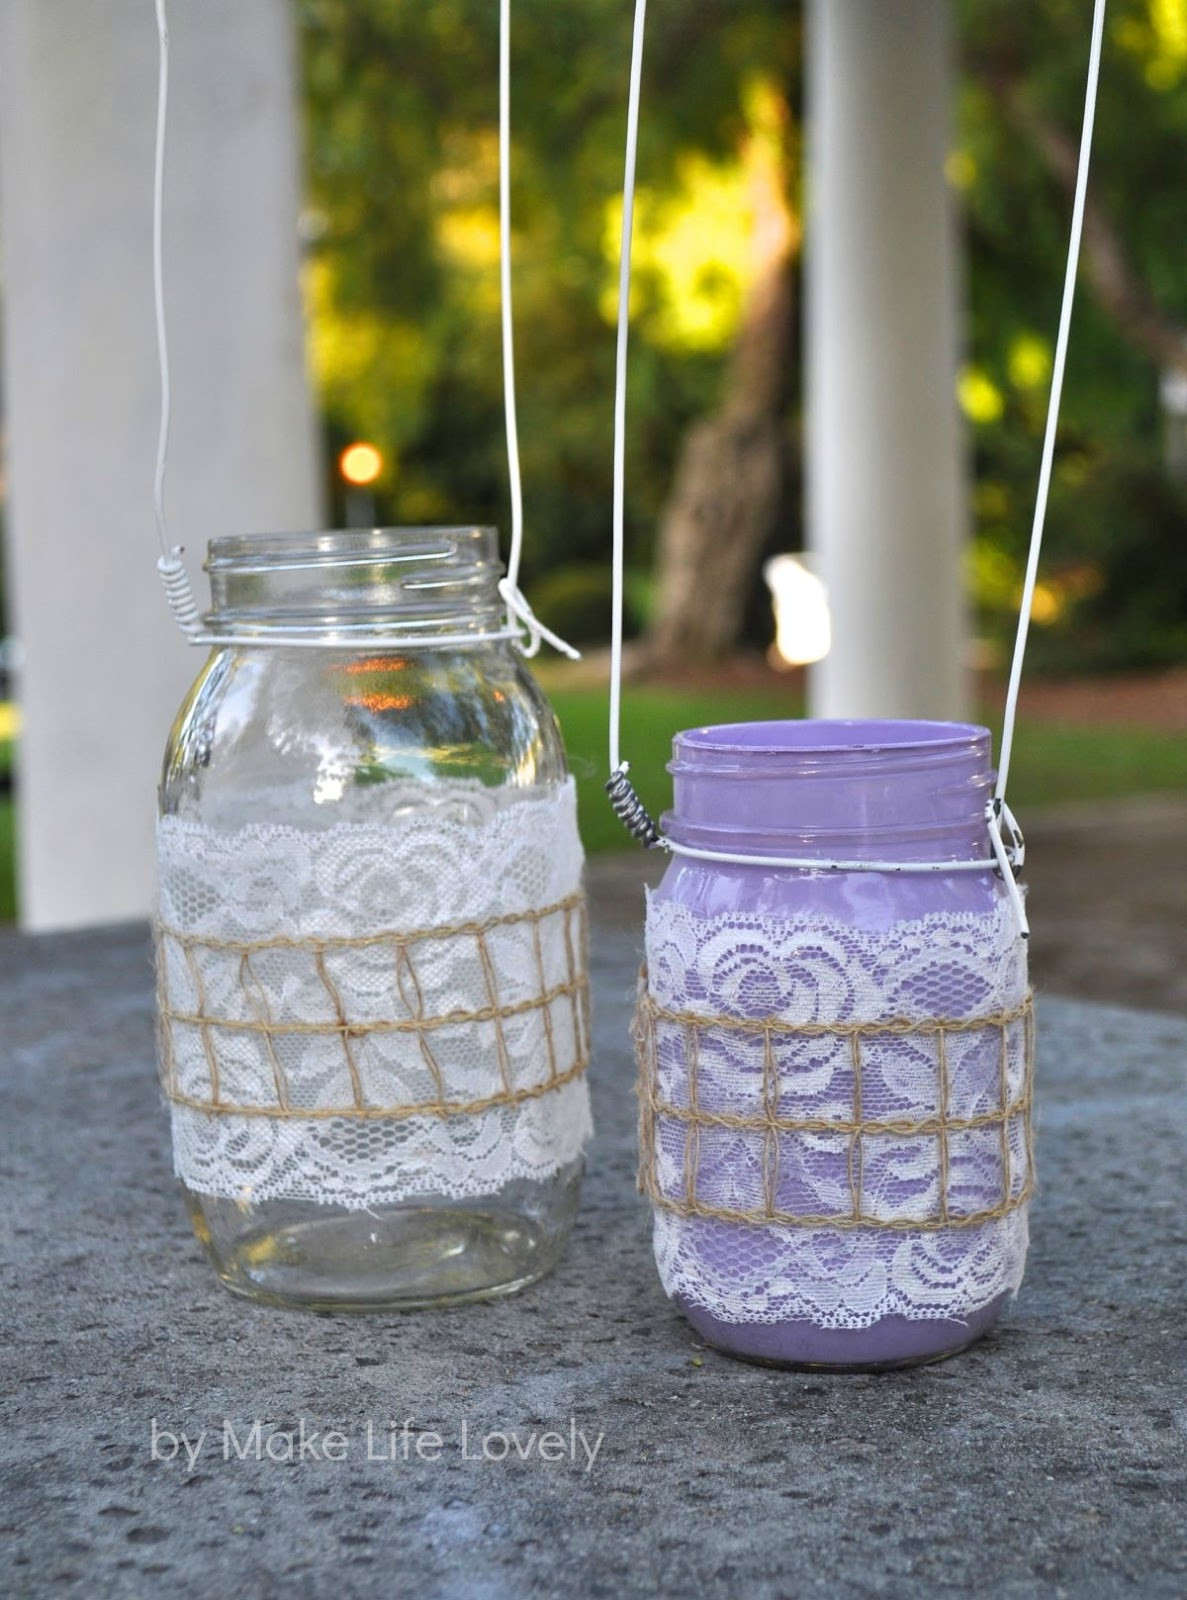 Best ideas about Mason Jar DIY
. Save or Pin DIY Mason Jar Lanterns Make Life Lovely Now.